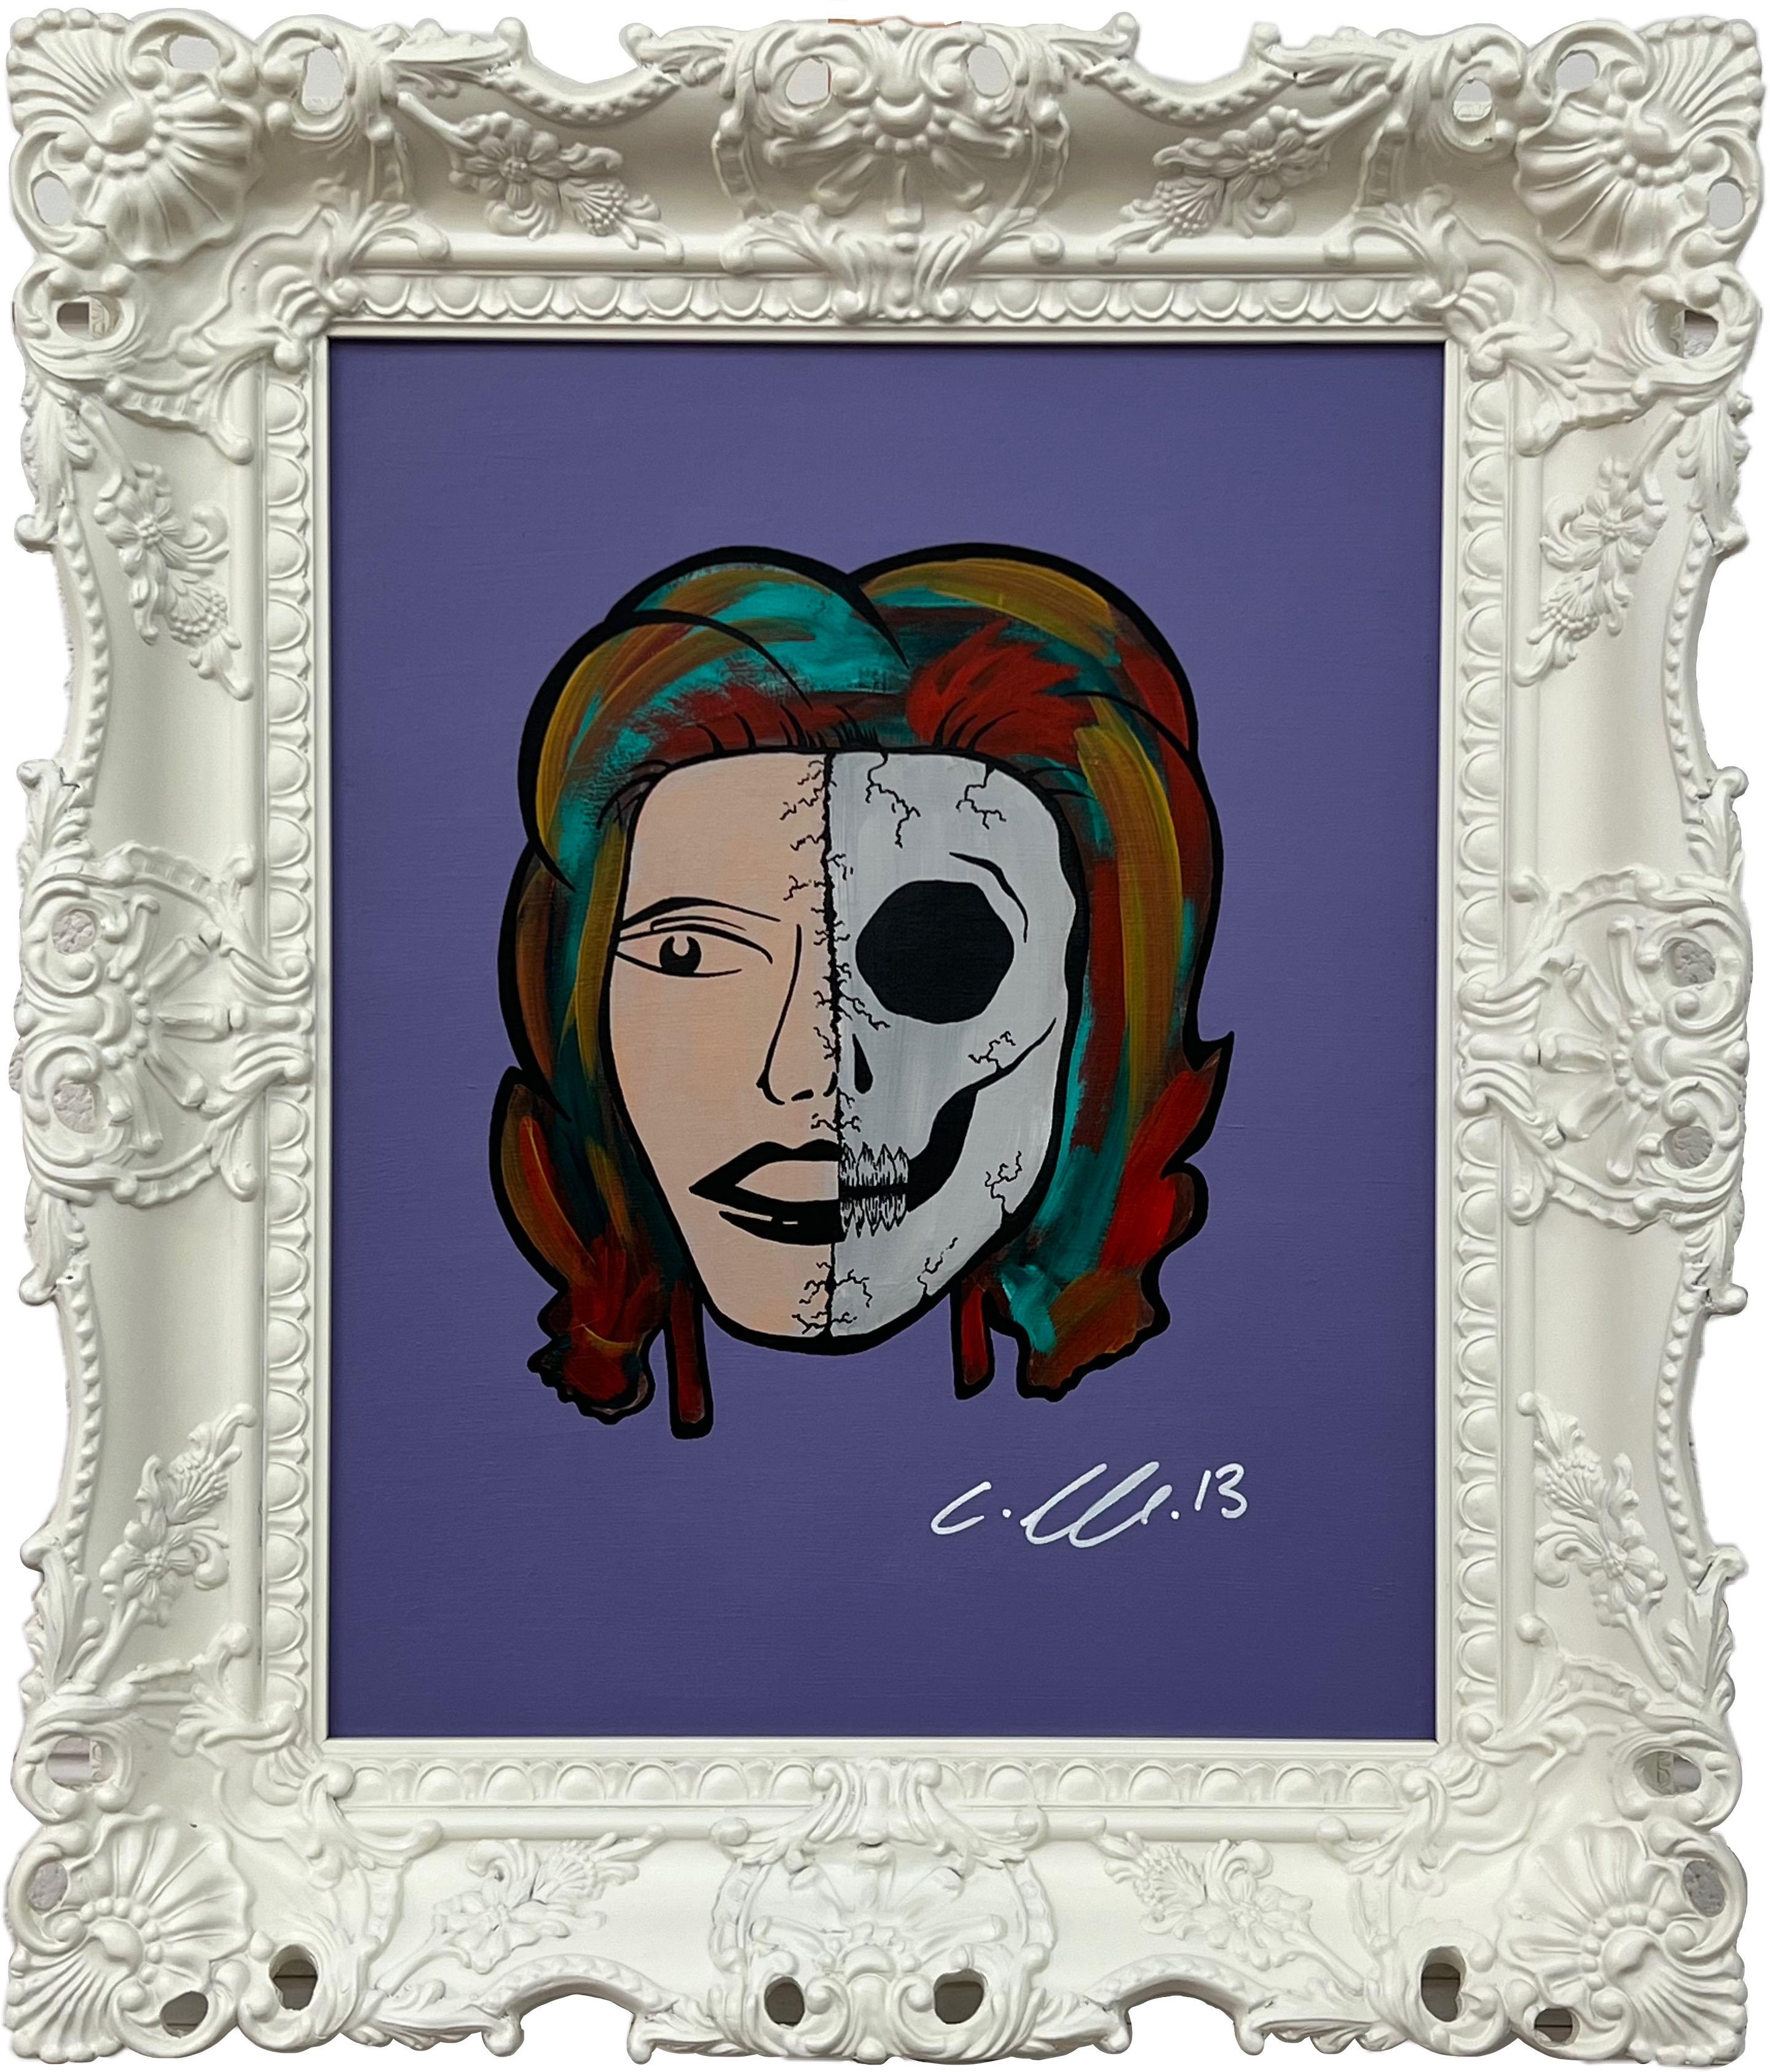 Chris Pegg Portrait Painting – Half Skull & Female Face Porträt Pop Art von britischer Urban Graffiti-Künstlerin 